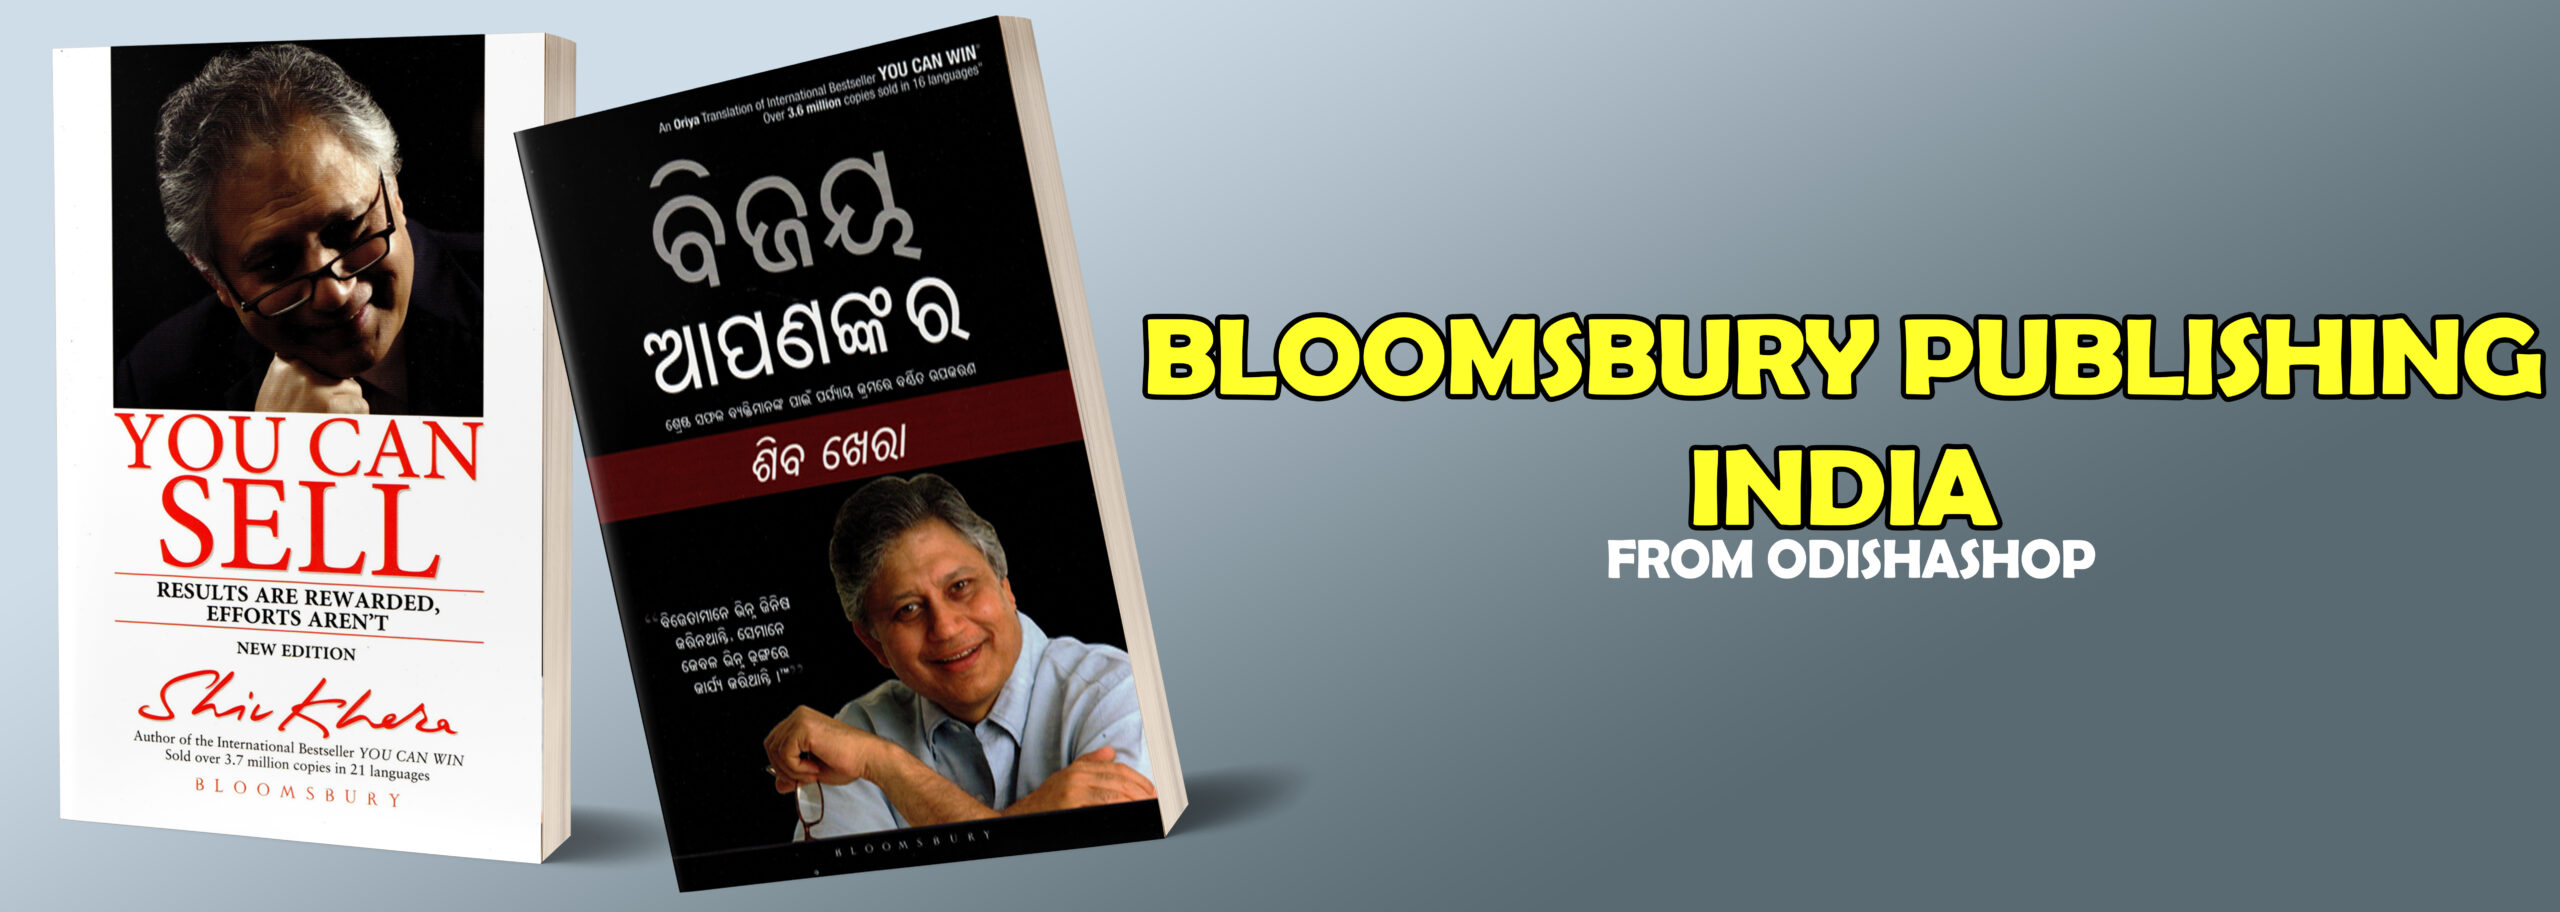 BLOOMSBURY PUBLISHING INDIA